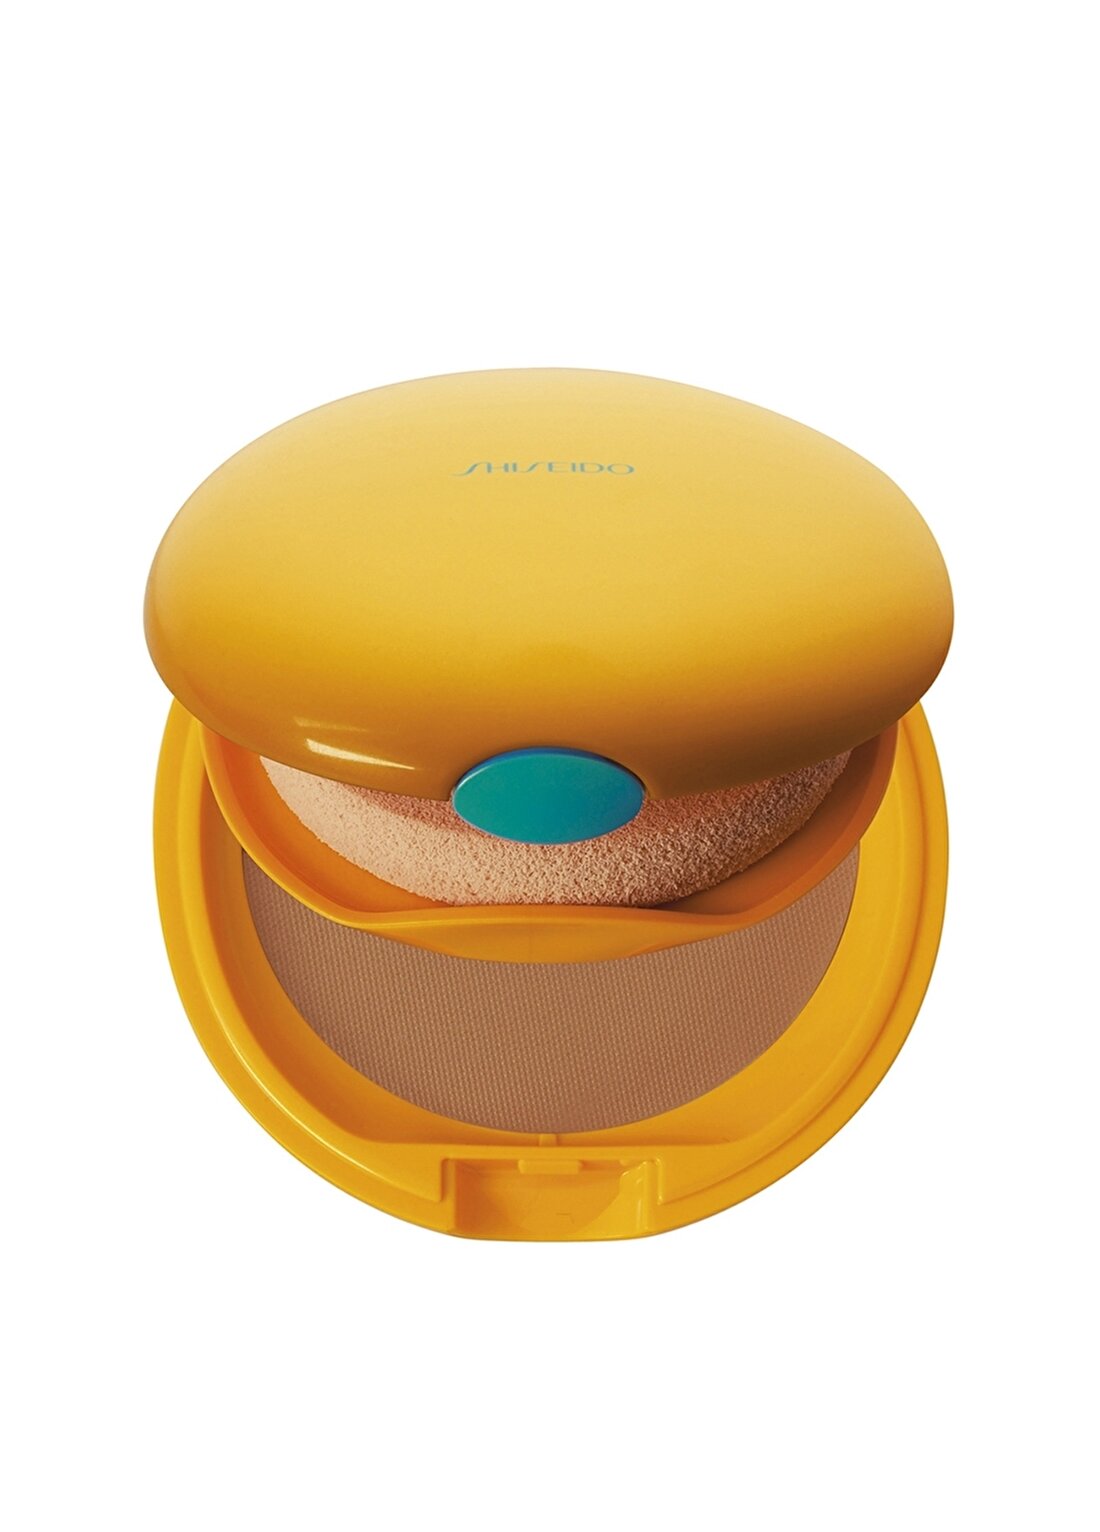 Shiseido Global Sun Care Tanning Compact Bronz Spf6 Güneş Ürünü